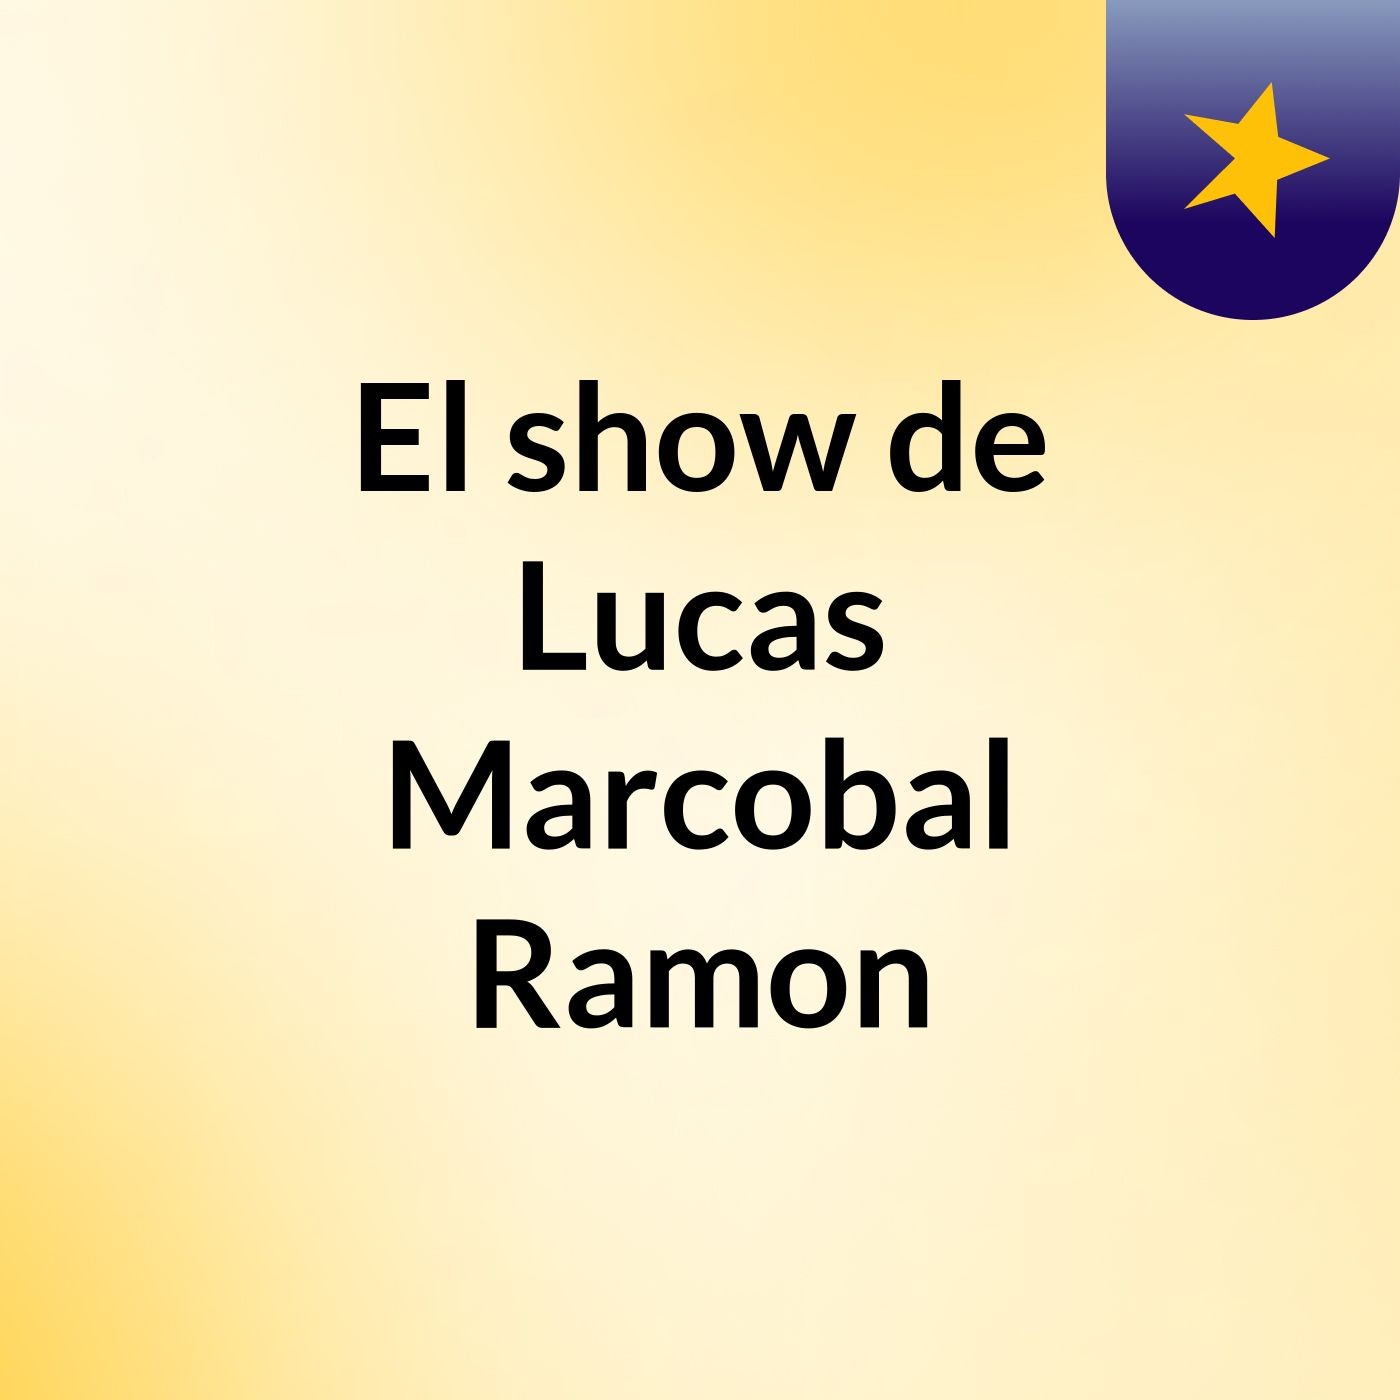 El show de Lucas Marcobal Ramon